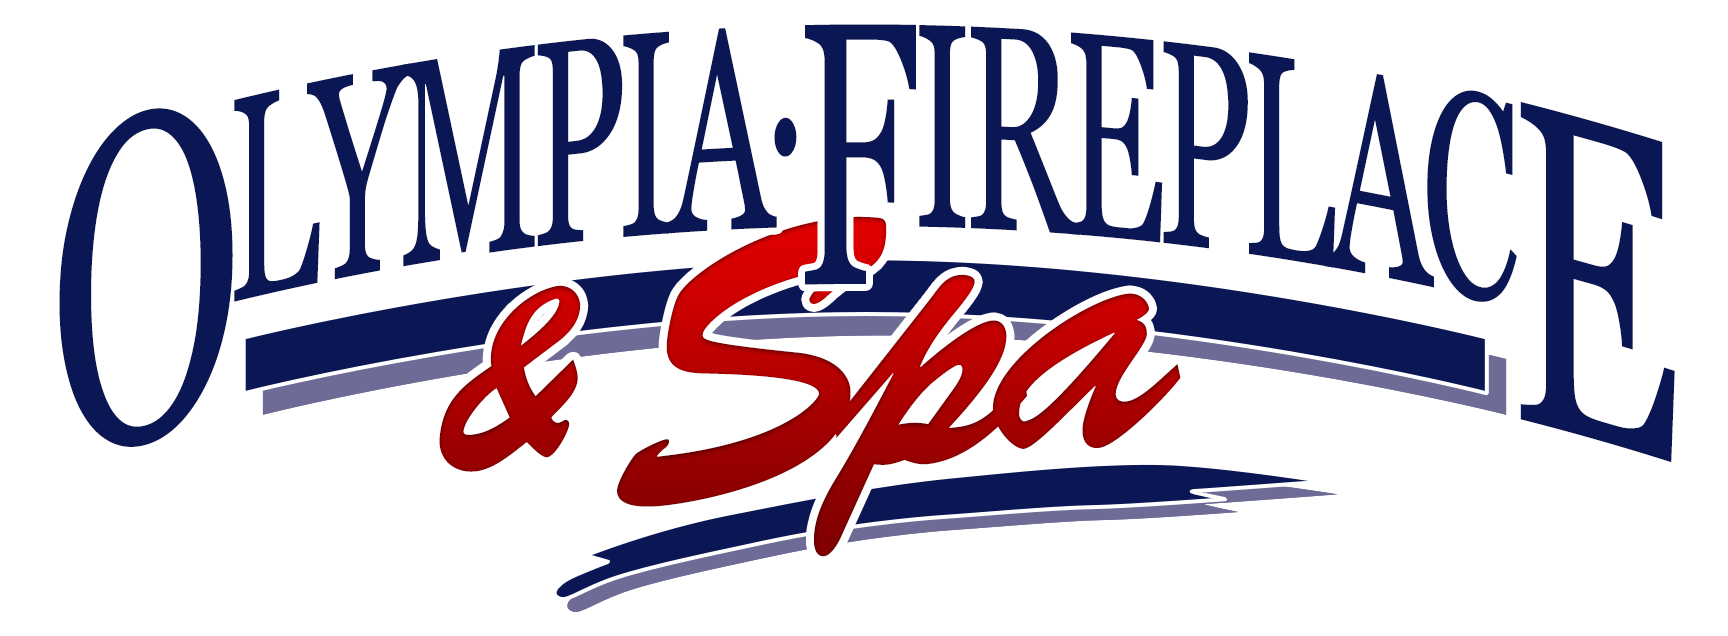 Olympia Fireplace & Spa Logo